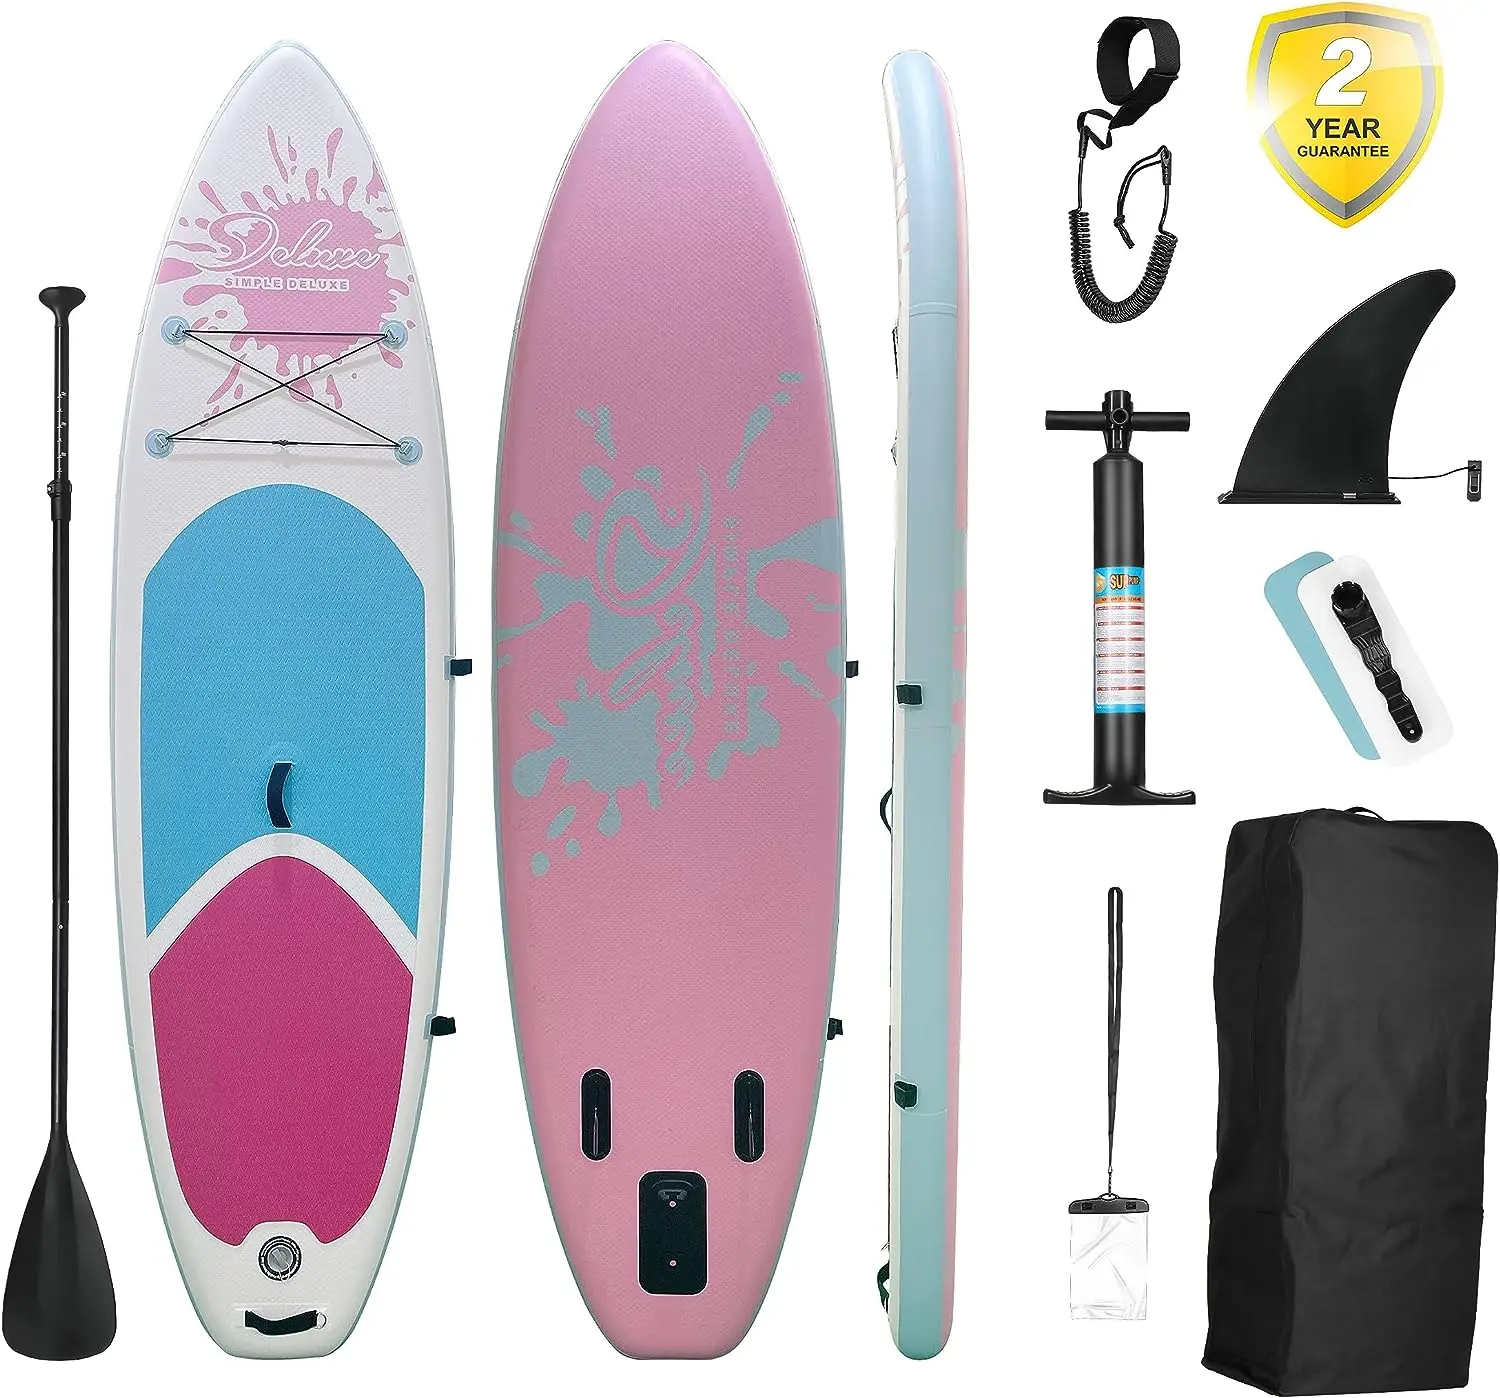 Надувная доска для сапсерфинга - Simple Deluxe Premium SUP для всех уровней подготовки, розовые доски для серфинга для взрослых и молодежи, Blow U